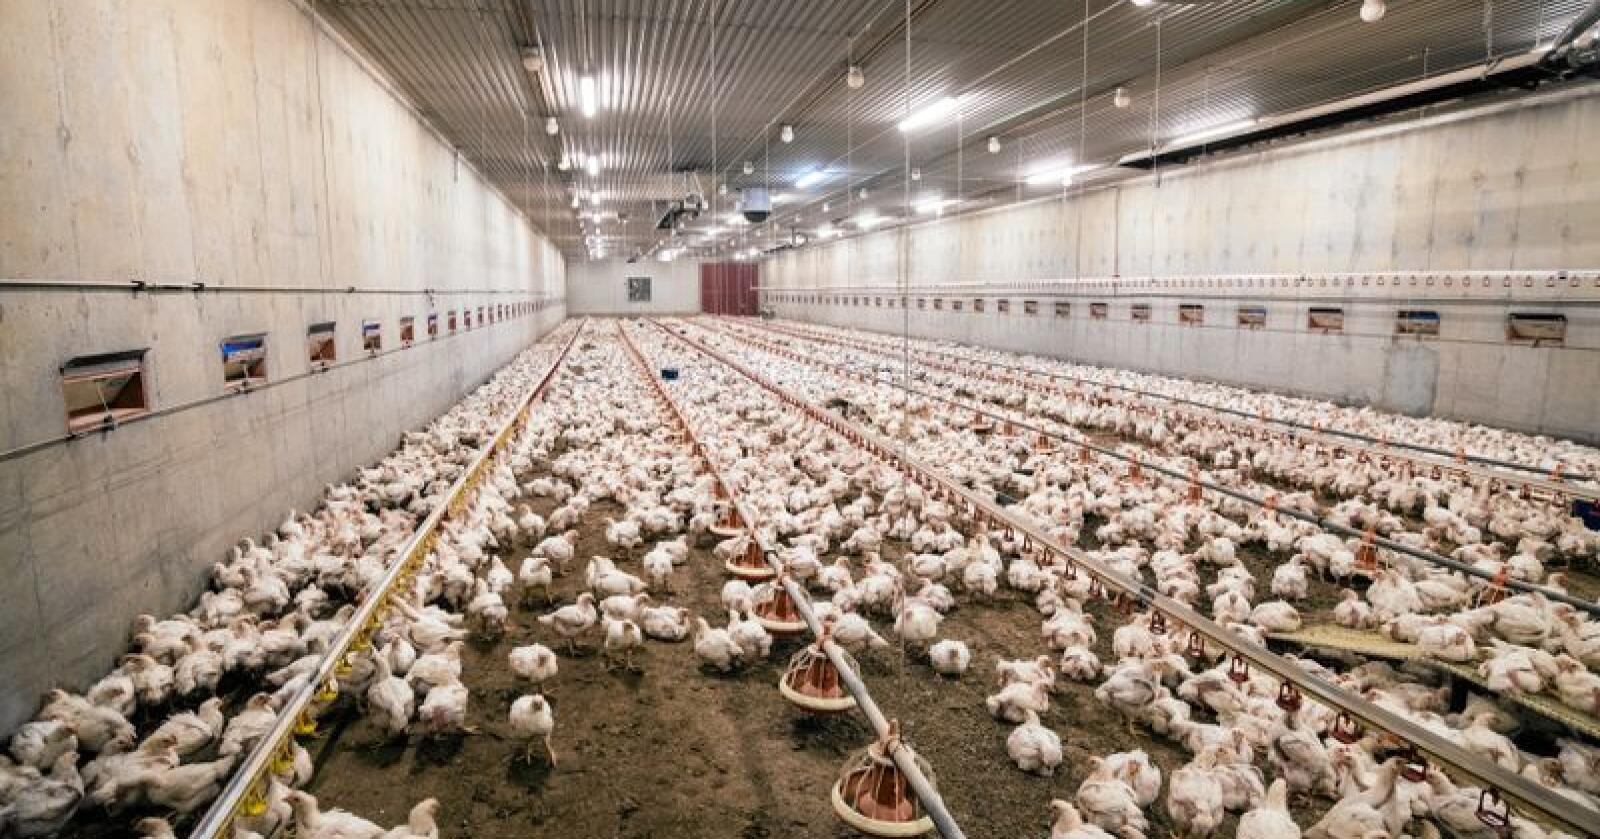 Dyrevelferd: Kyllingnæringa hele tiden i utvikling og gjennomfører forbedringer, skriver innsenderne. Foto: Vidar Sandnes